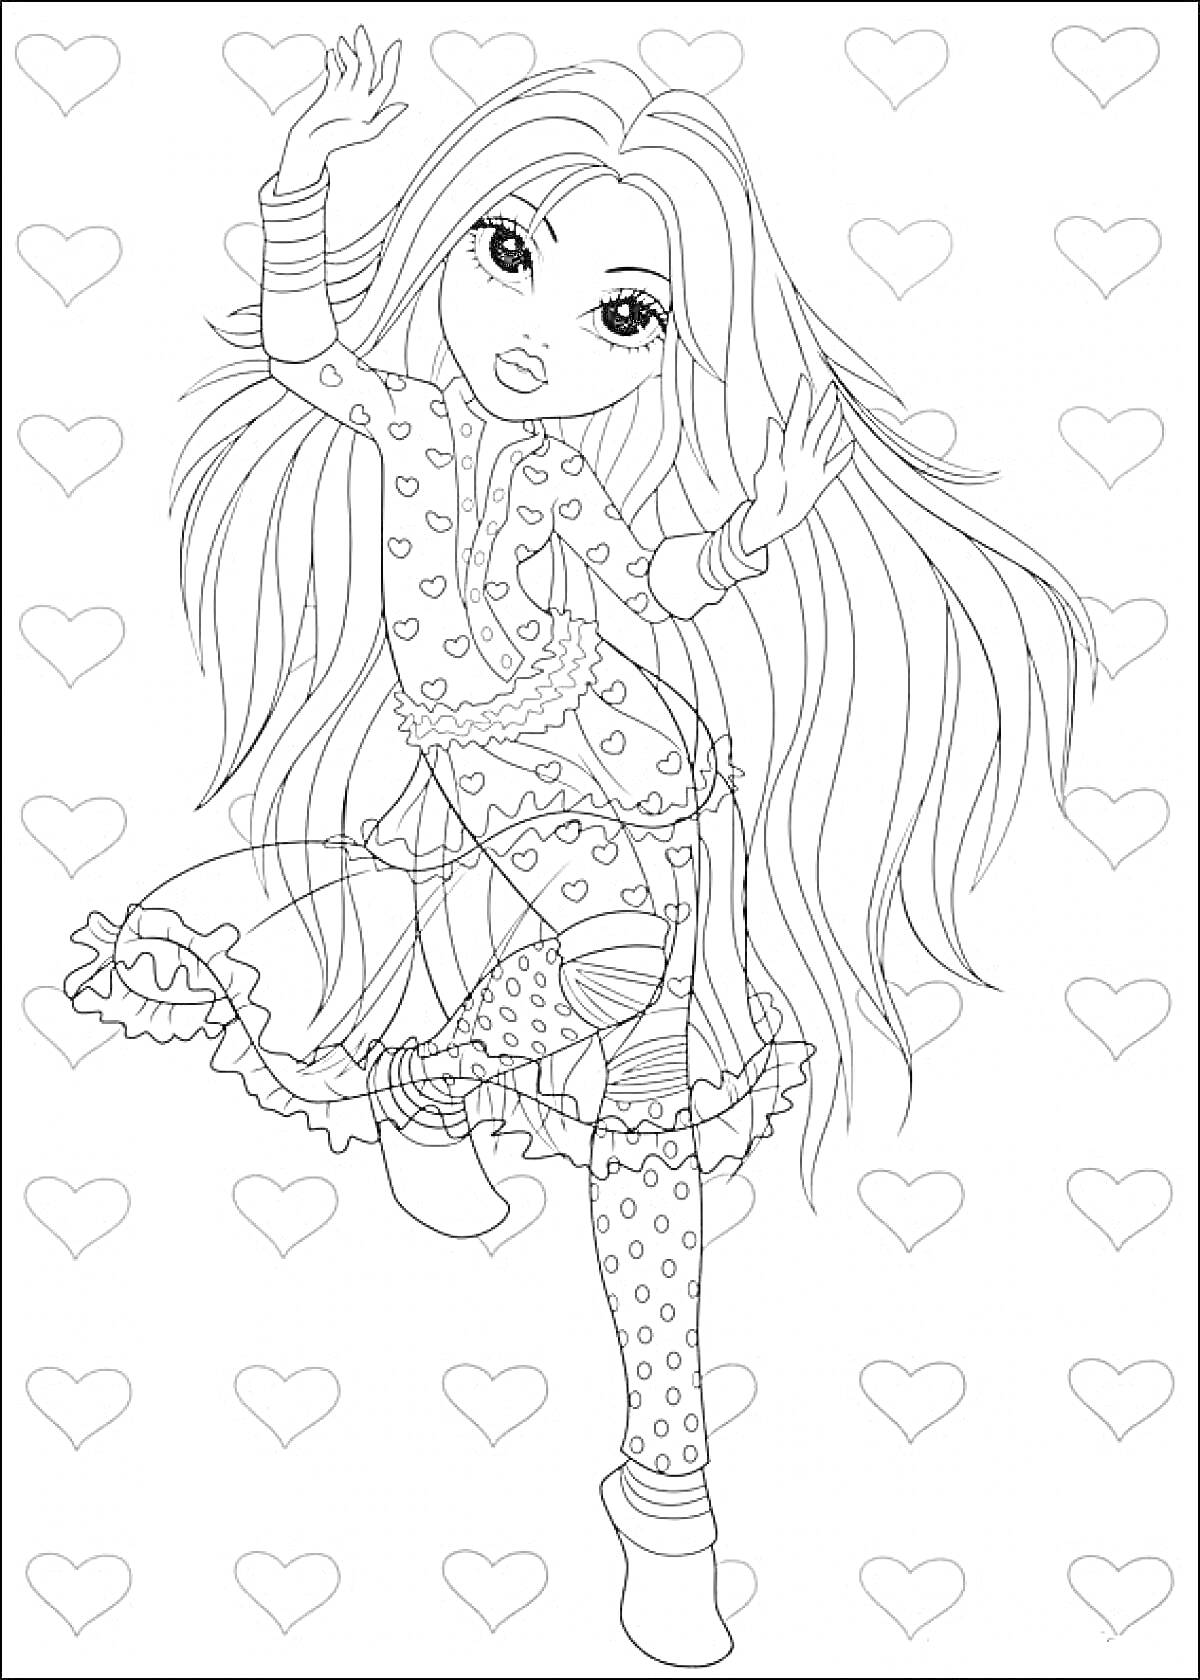 Девочка с длинными волосами в платье и леггинсах на фоне сердца